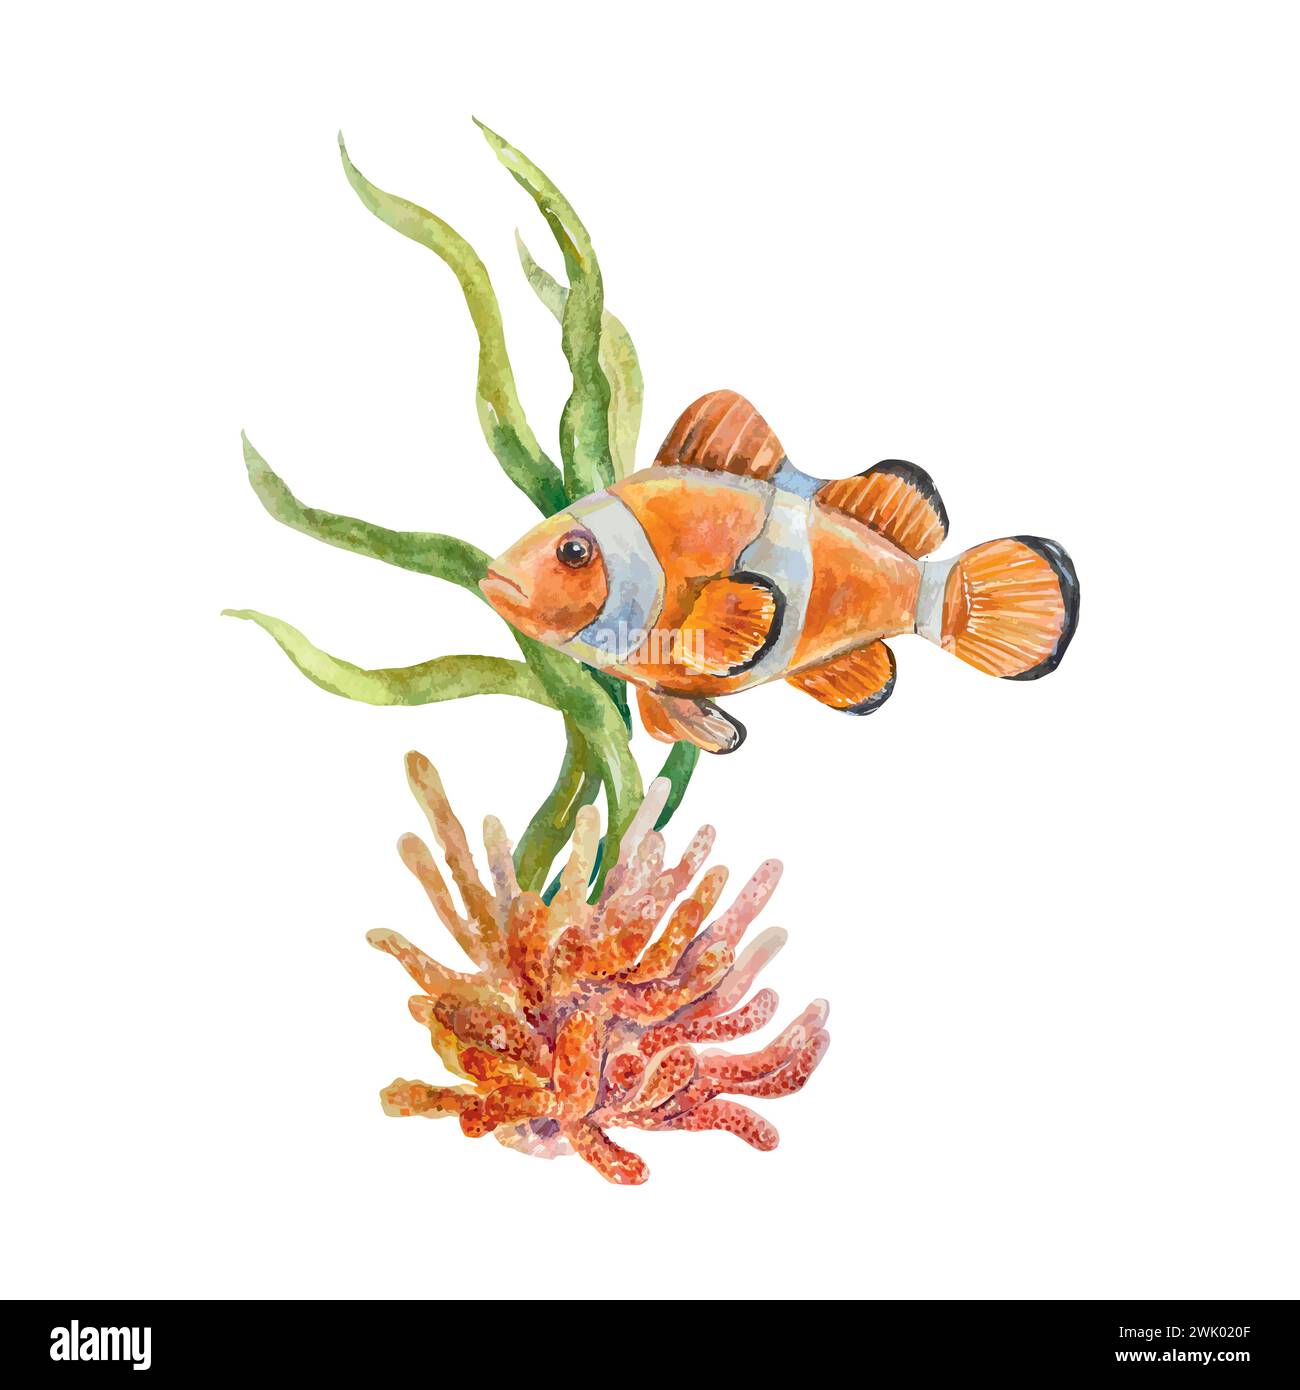 Poisson clown, un poisson orange avec une bande blanche. Illustration vectorielle de vie marine. Élément de design pour cartes postales, bannières de voyage, flyers, étiquettes, affiches. Illustration de Vecteur